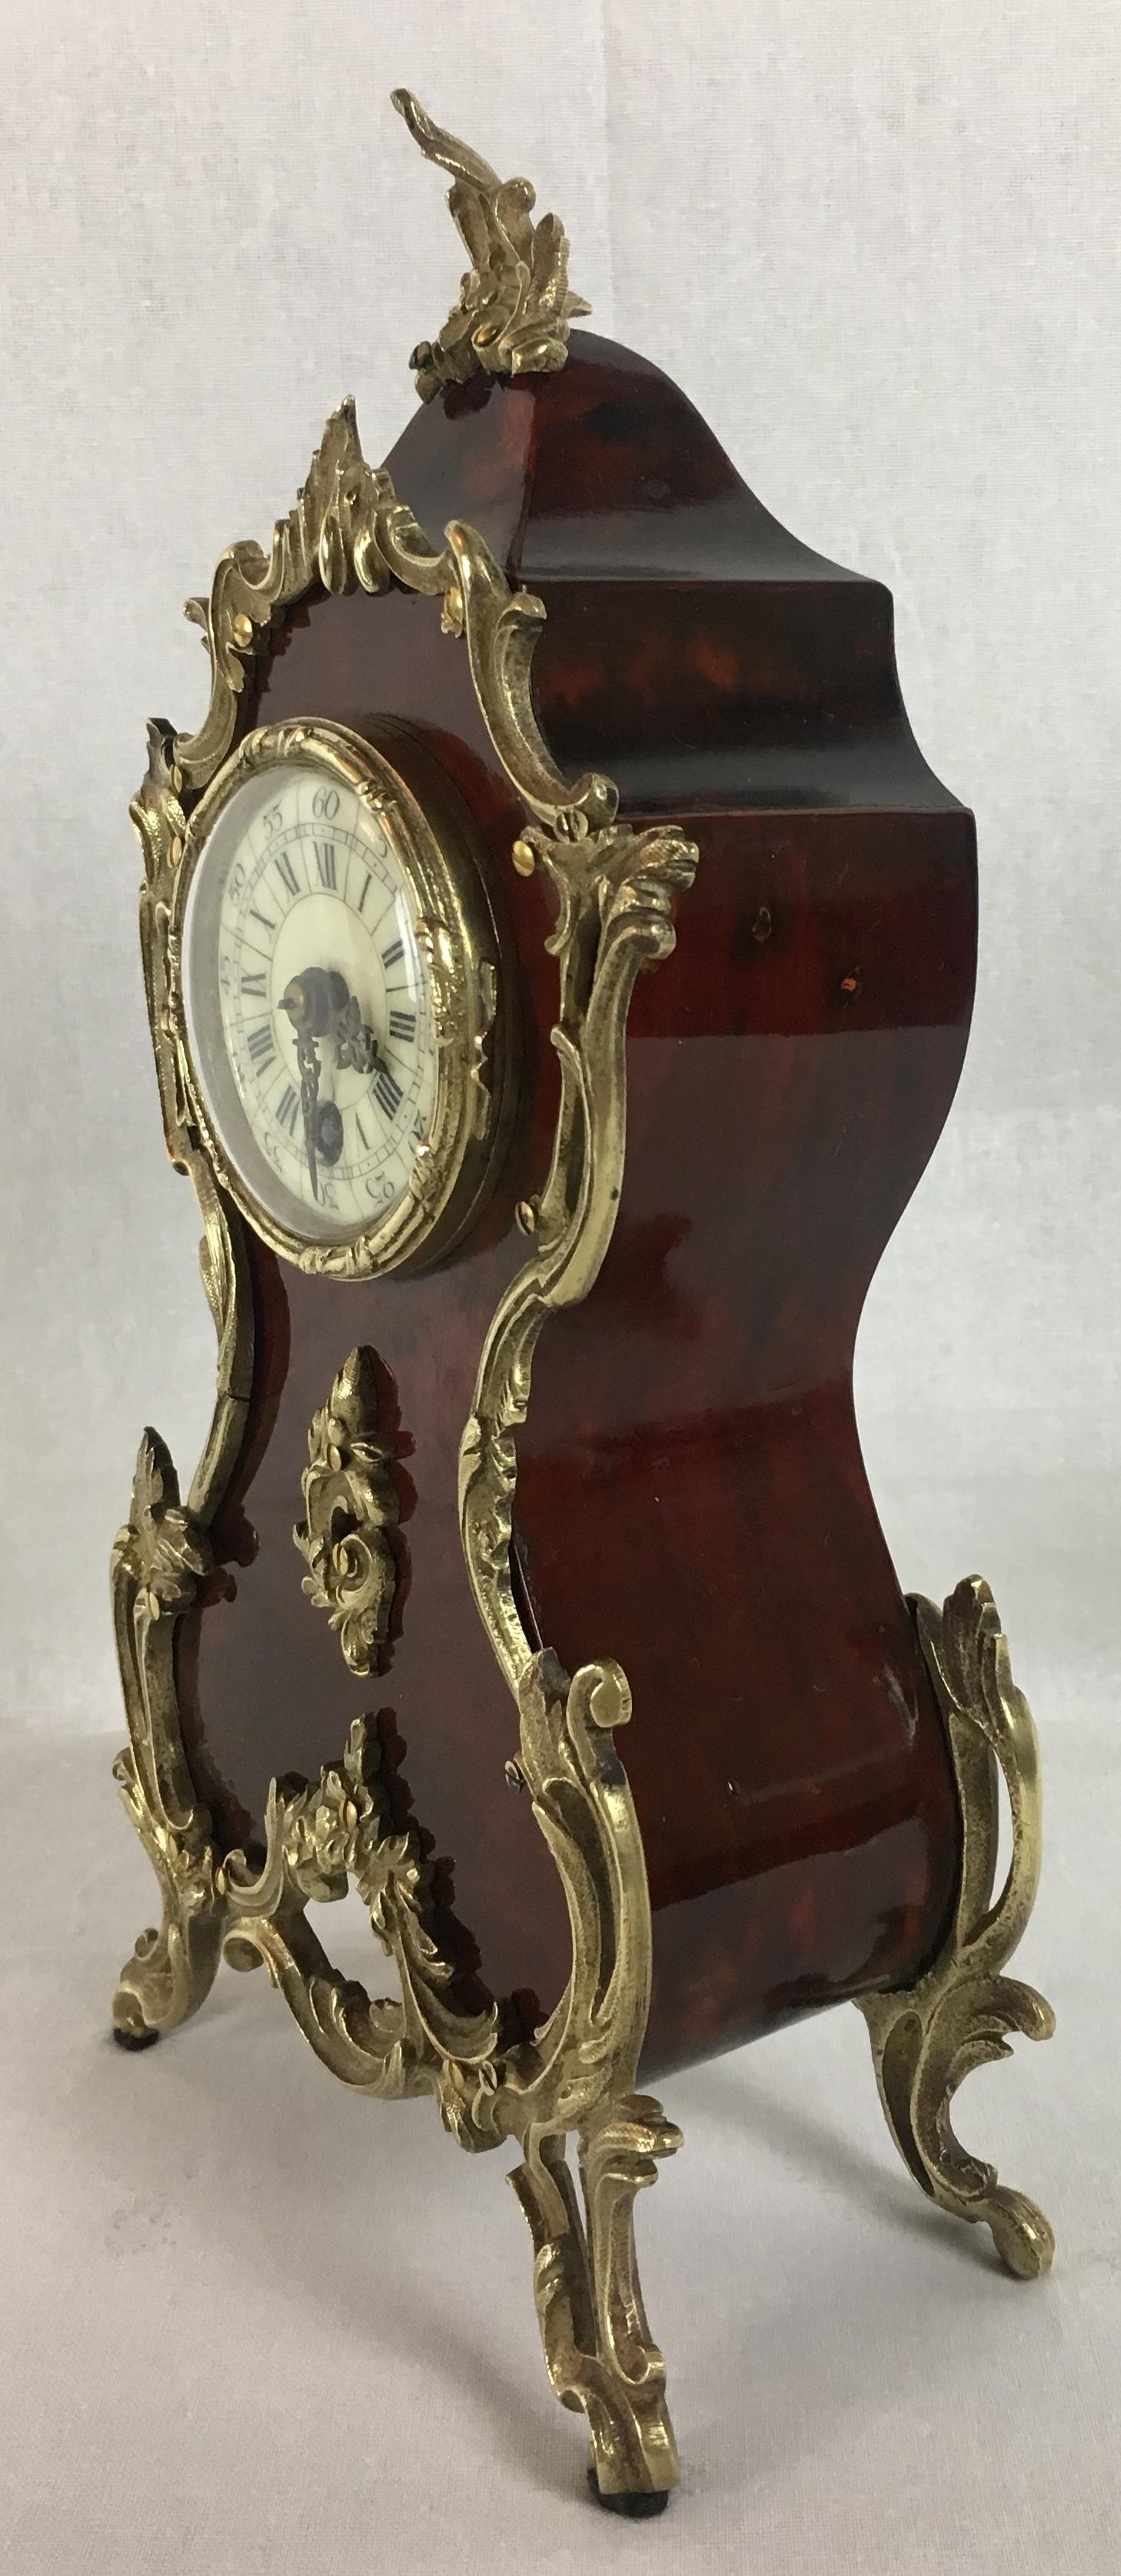 Eine antike französische Uhr von hervorragender Qualität, um 1875. Diese Kaminsimsuhr im Boulle-Stil besteht aus rotem Schildpatt, das für diese Zeit typisch ist. Messingeinlagen auf der Vorderseite und den Seiten des Gehäuses unterstreichen die